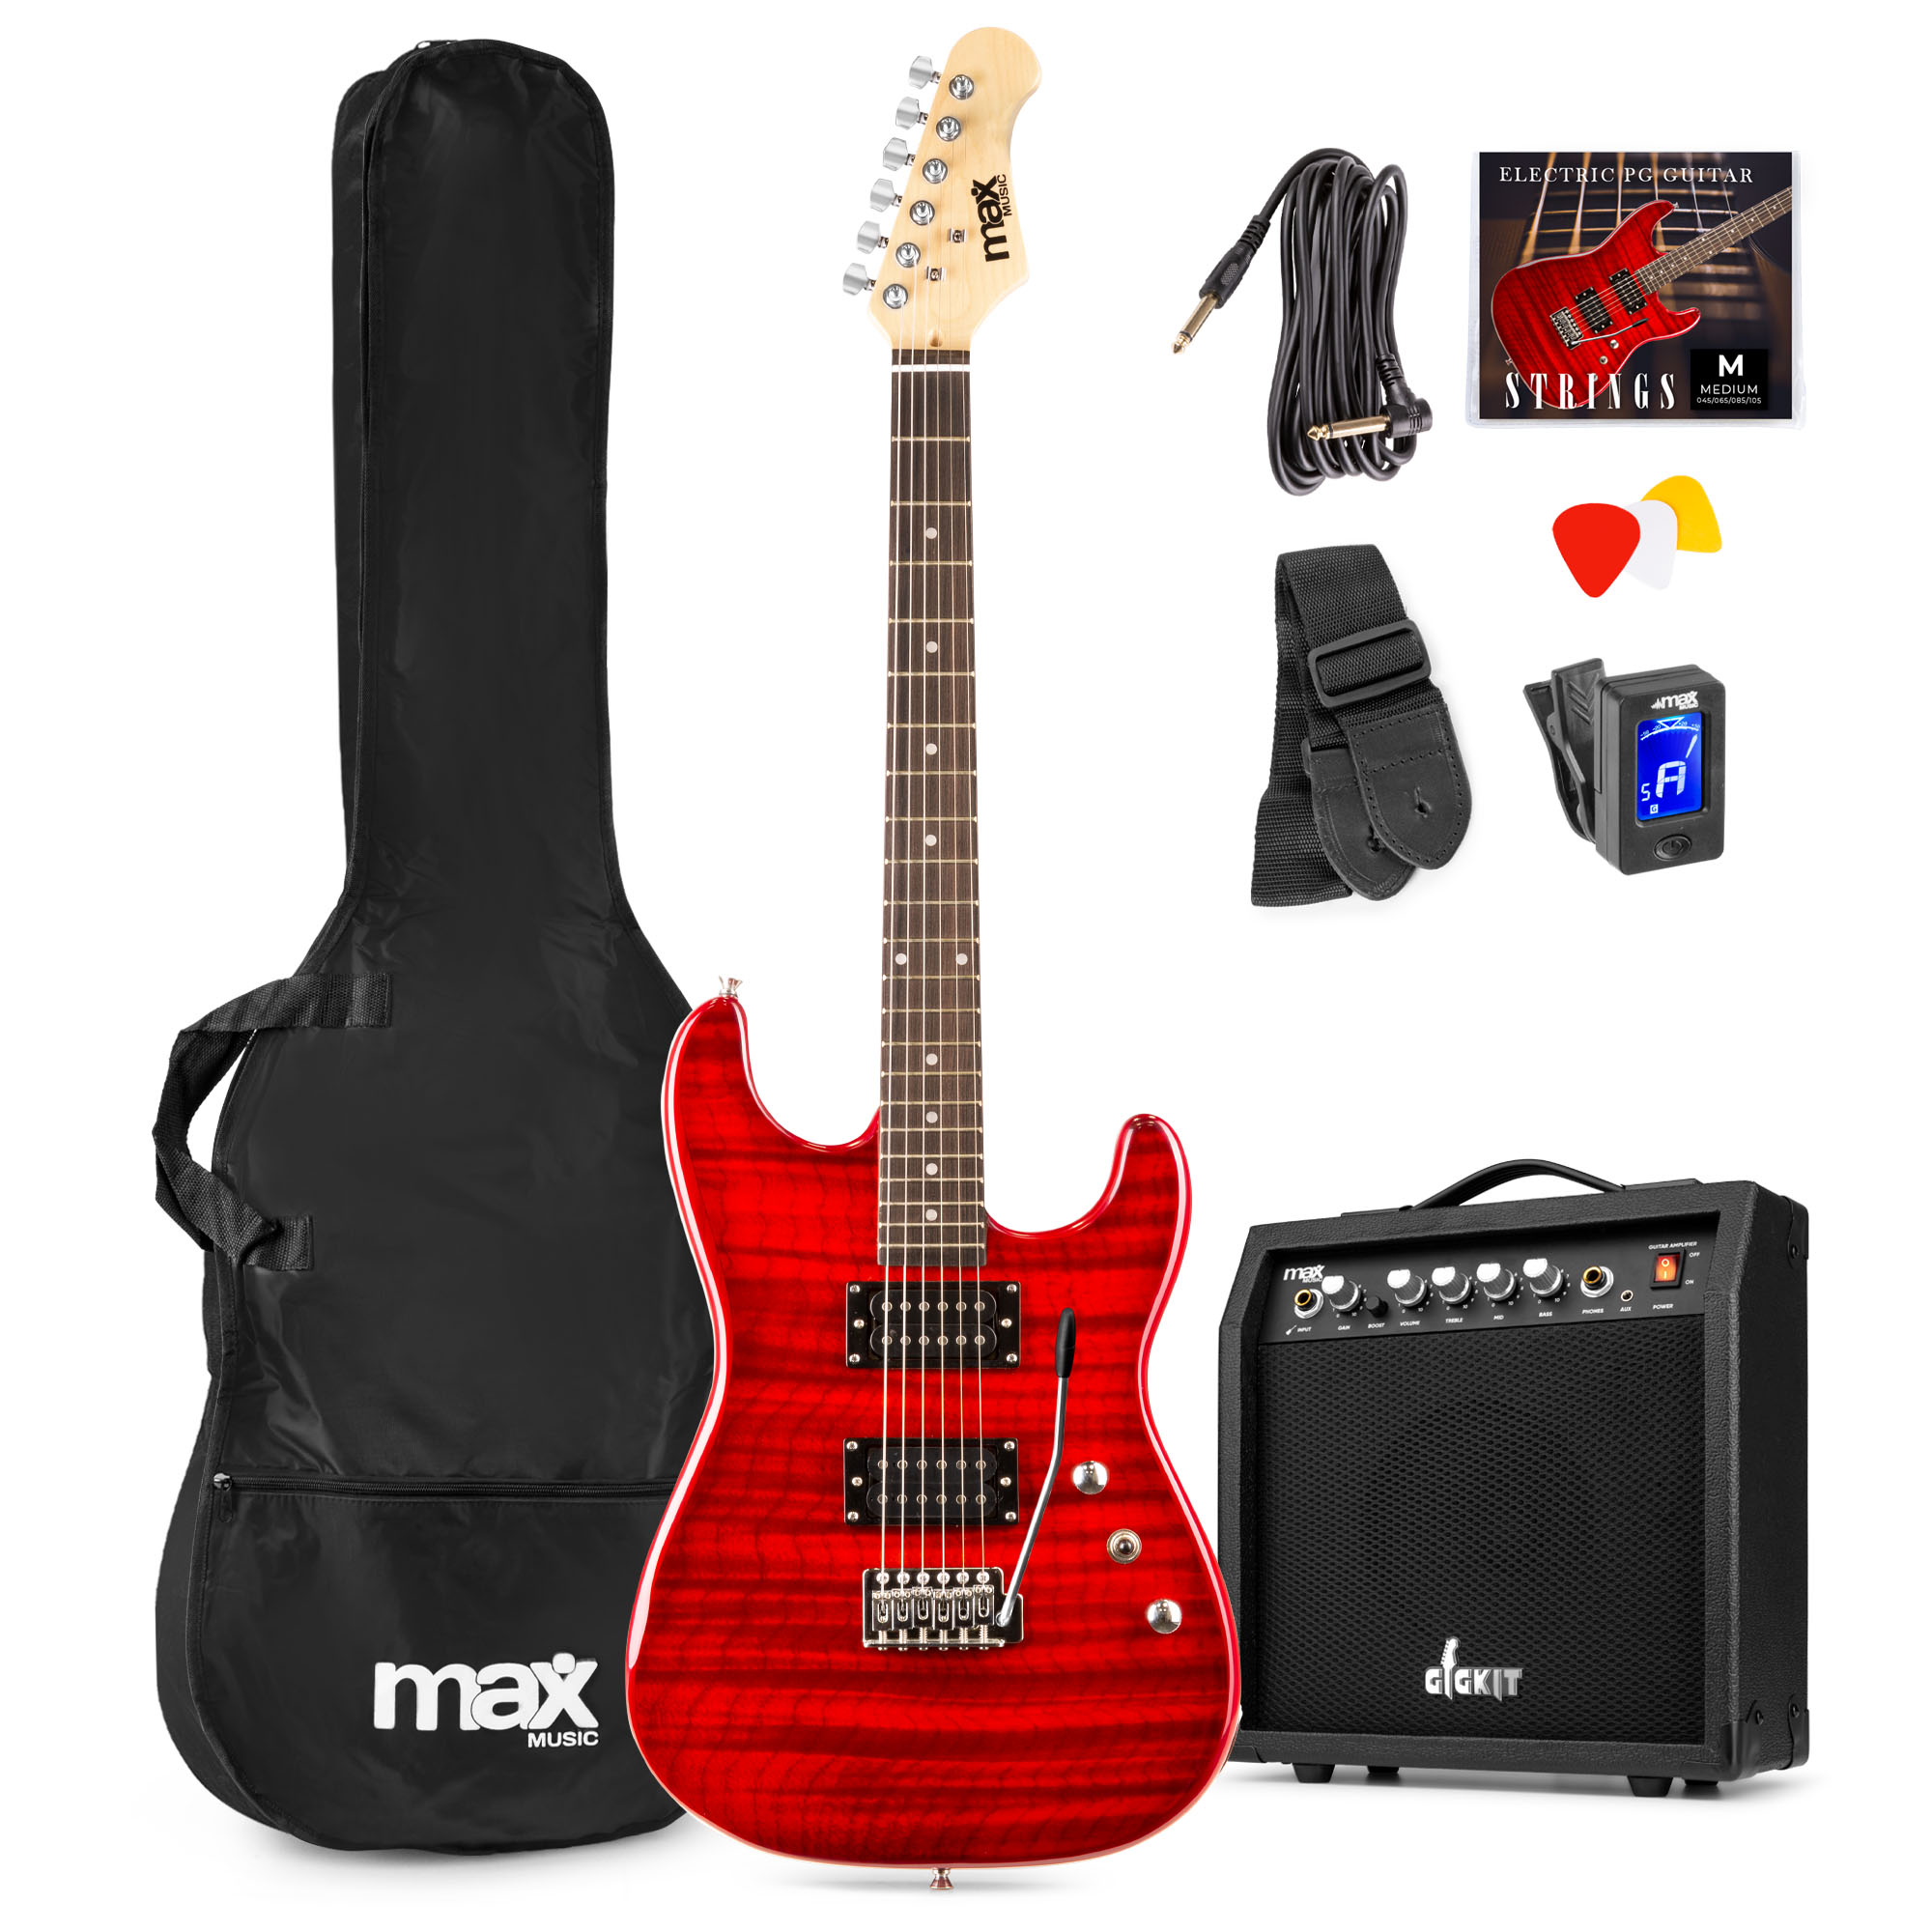 Max GigKit PG Elektrische gitaar met 40 Watt versterker en accessoires - Donker Rood